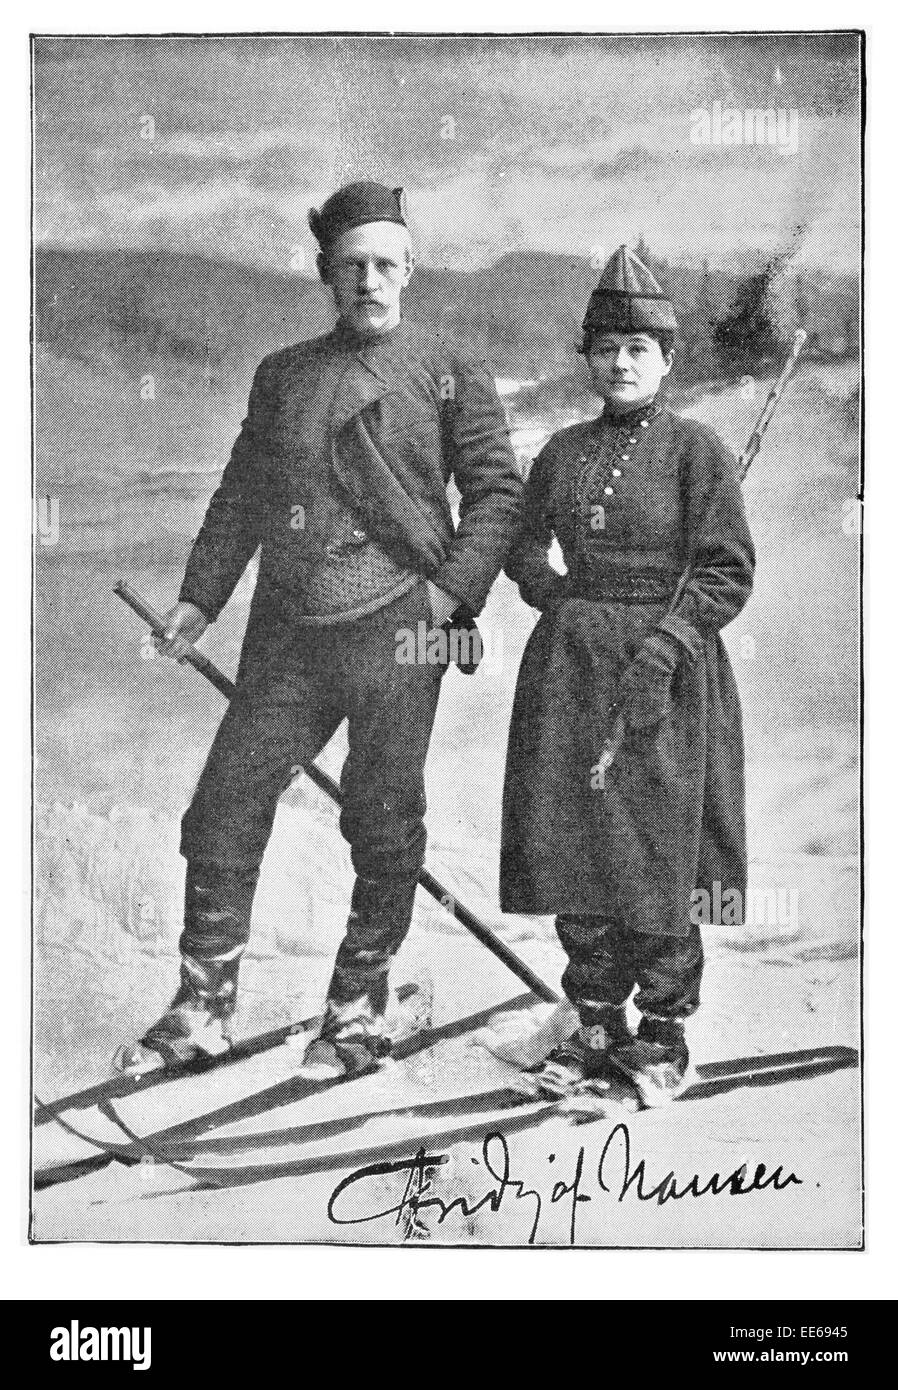 Nansen Fridtjof Nansen et Fru sur ski Ski diplomate scientifique explorateur norvégien, lauréate du Prix Nobel de la paix l'aide humanitaire Banque D'Images